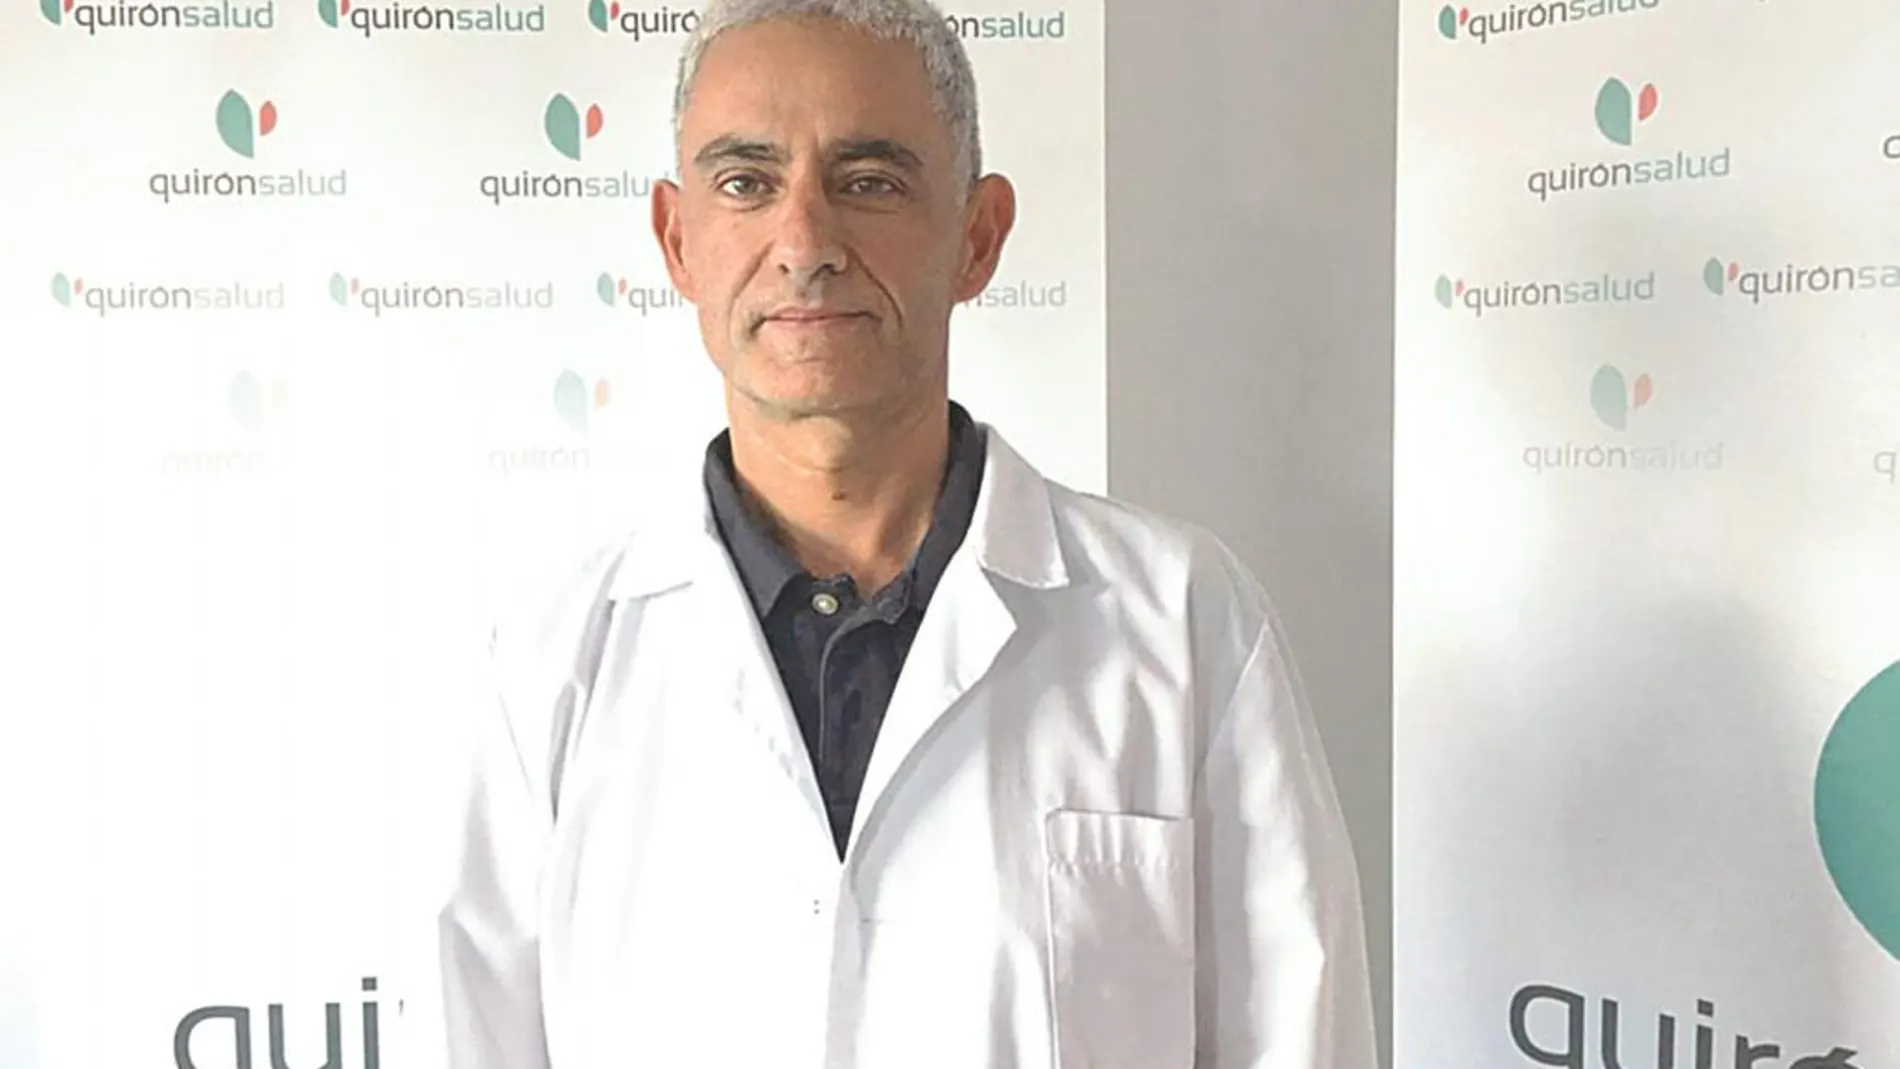 Dr. Bartolomé López Viedma / Endoscopista de la Unidad de Obesidad del Hospital Quirónsalud Ciudad Real